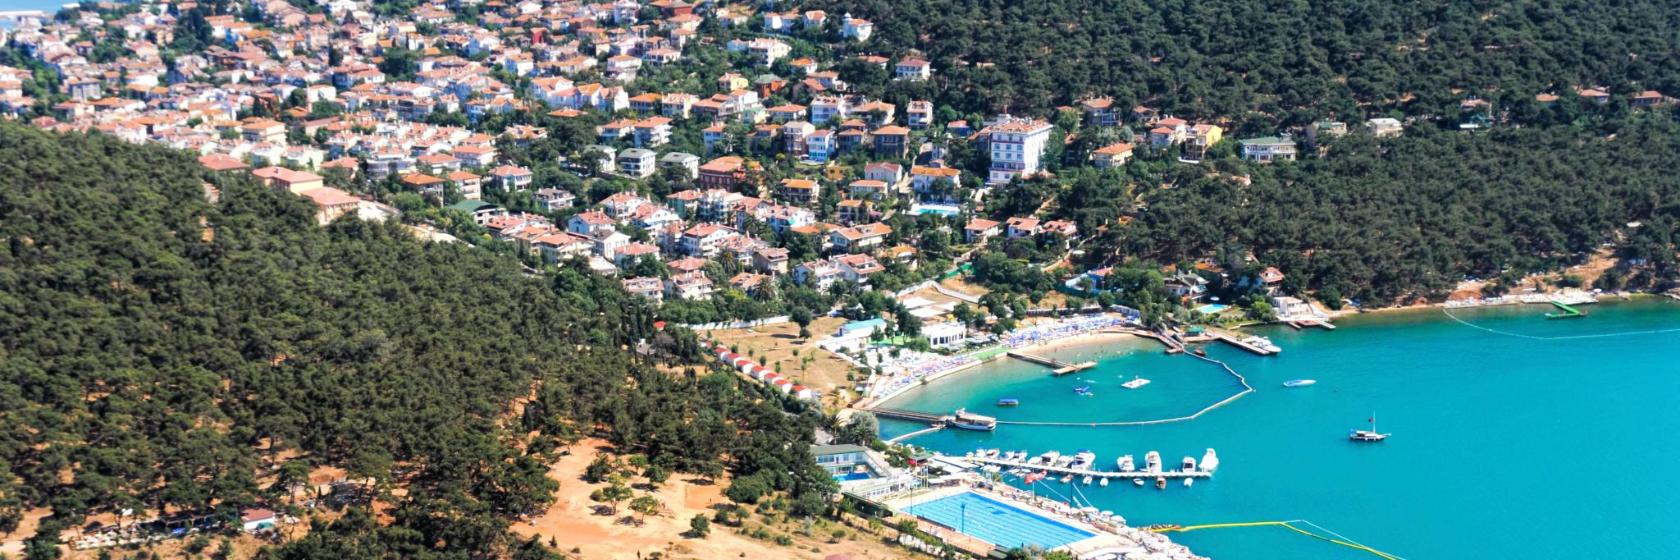 The Best Heybeliada Hotels Where To Stay On And Around Heybeliada Turkey [ 560 x 1680 Pixel ]